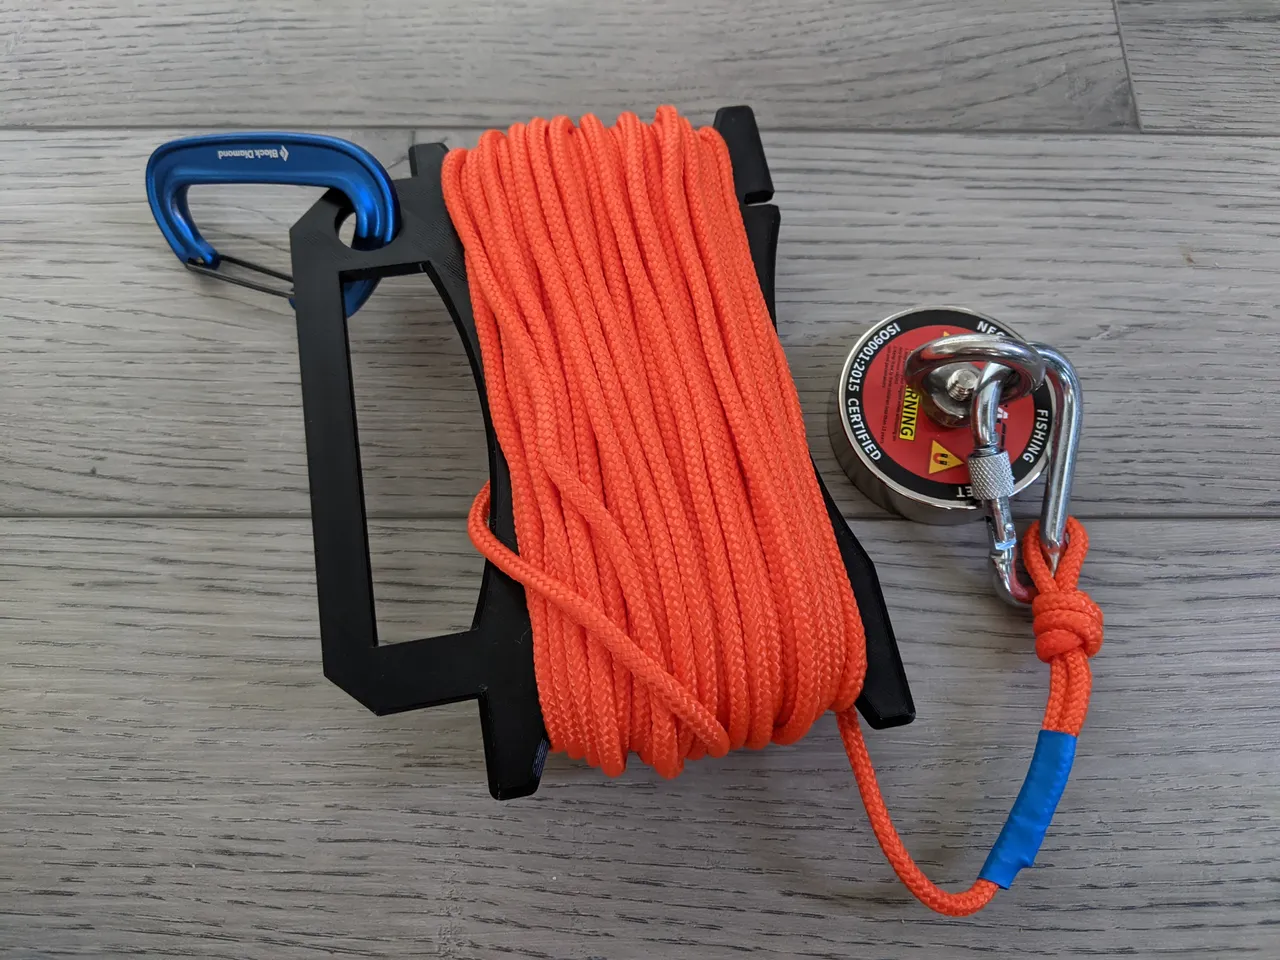 magnet fishing rope winder by JPerkes